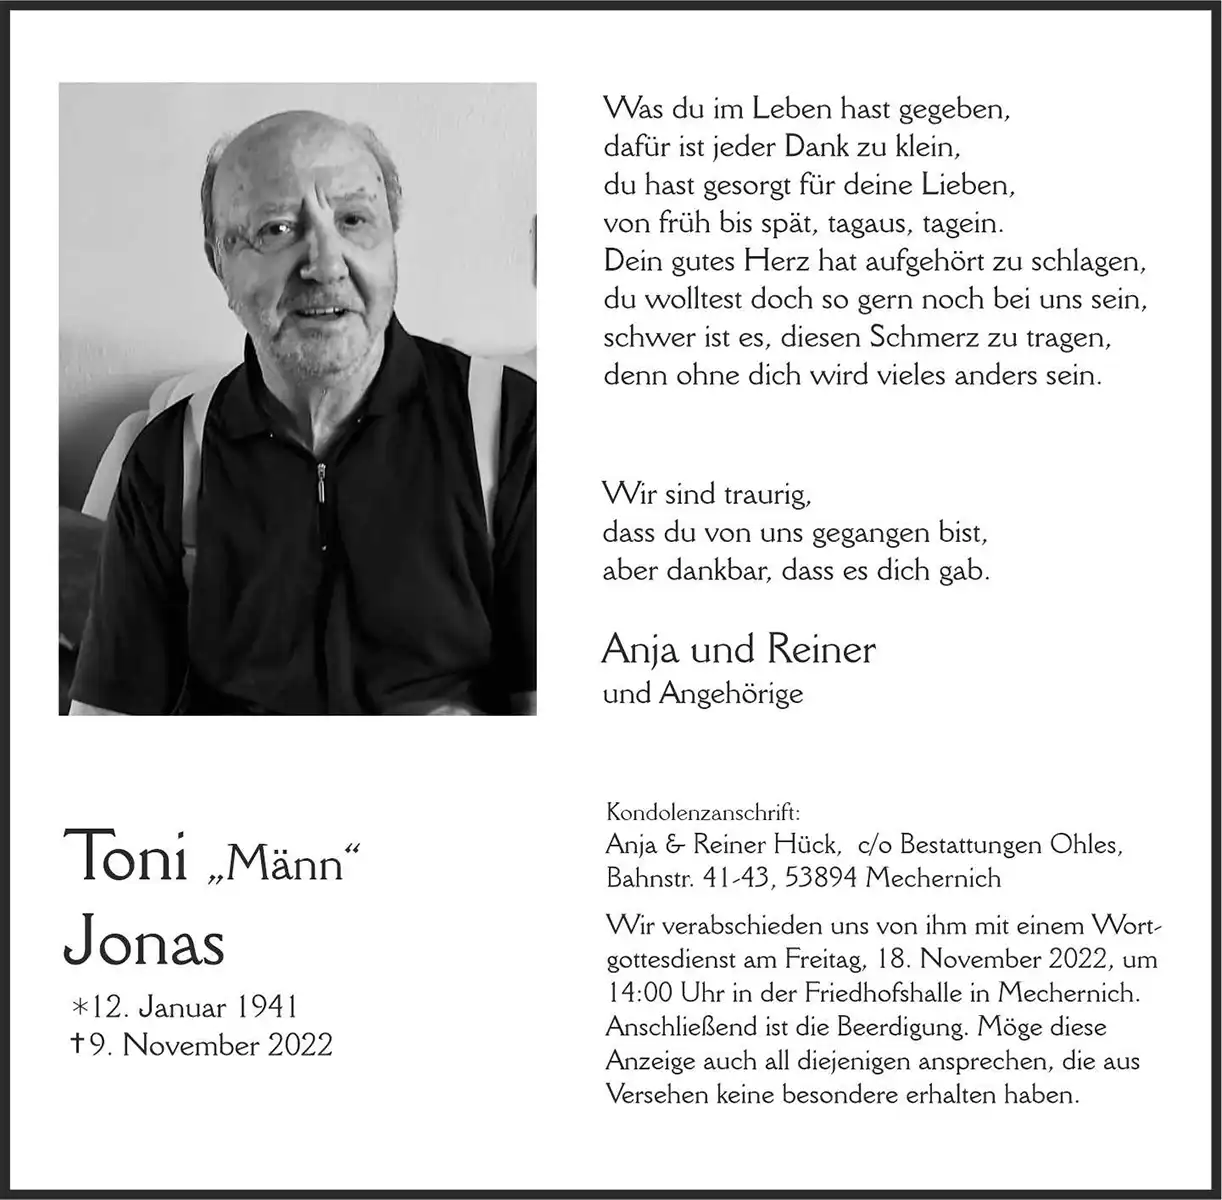 Toni Jonas